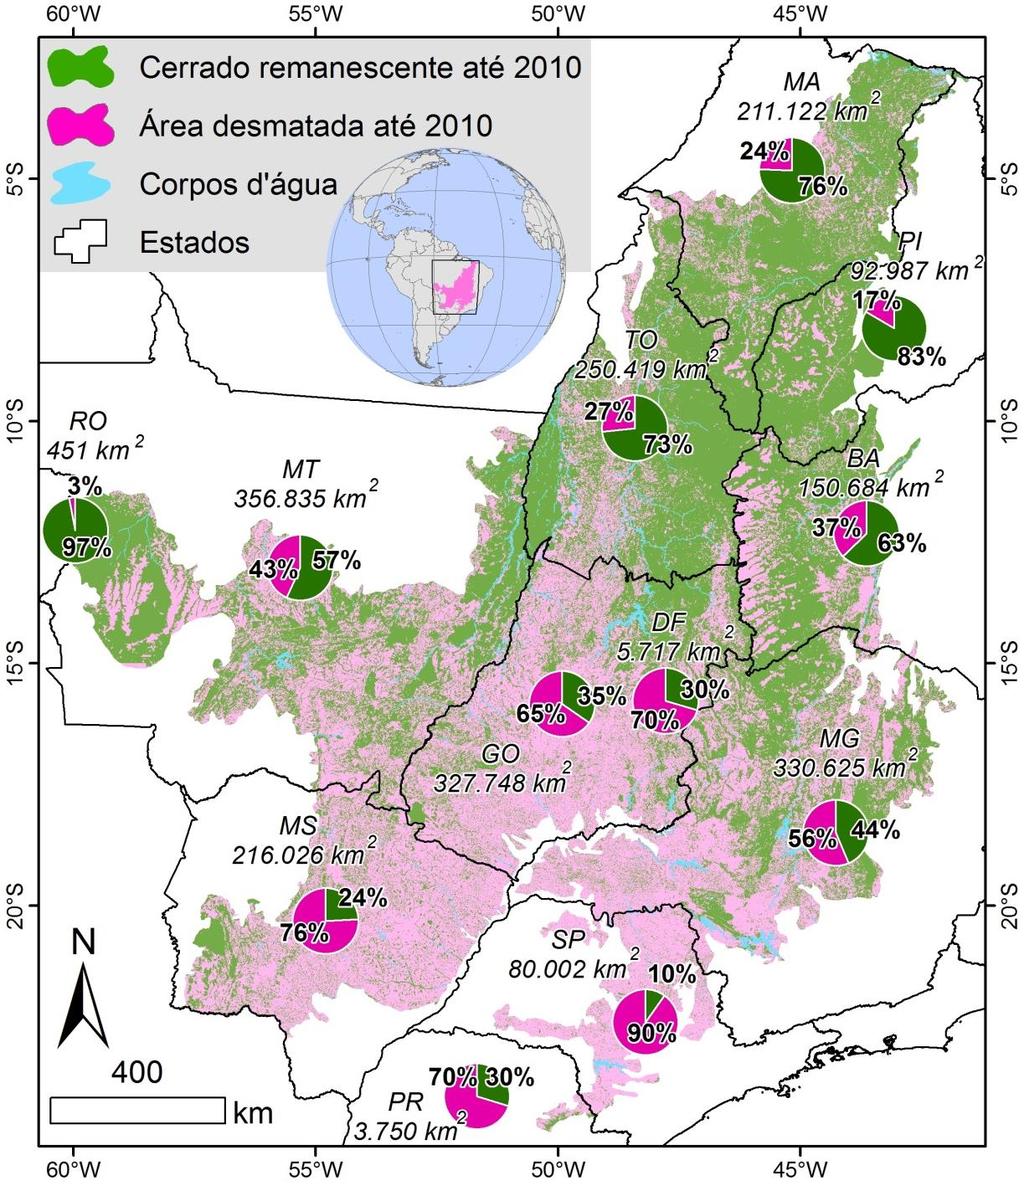 Figura 2. Área total do bioma e proporções de área desmatada e remanescente em 2010 nos estados que compõem o Cerrado.